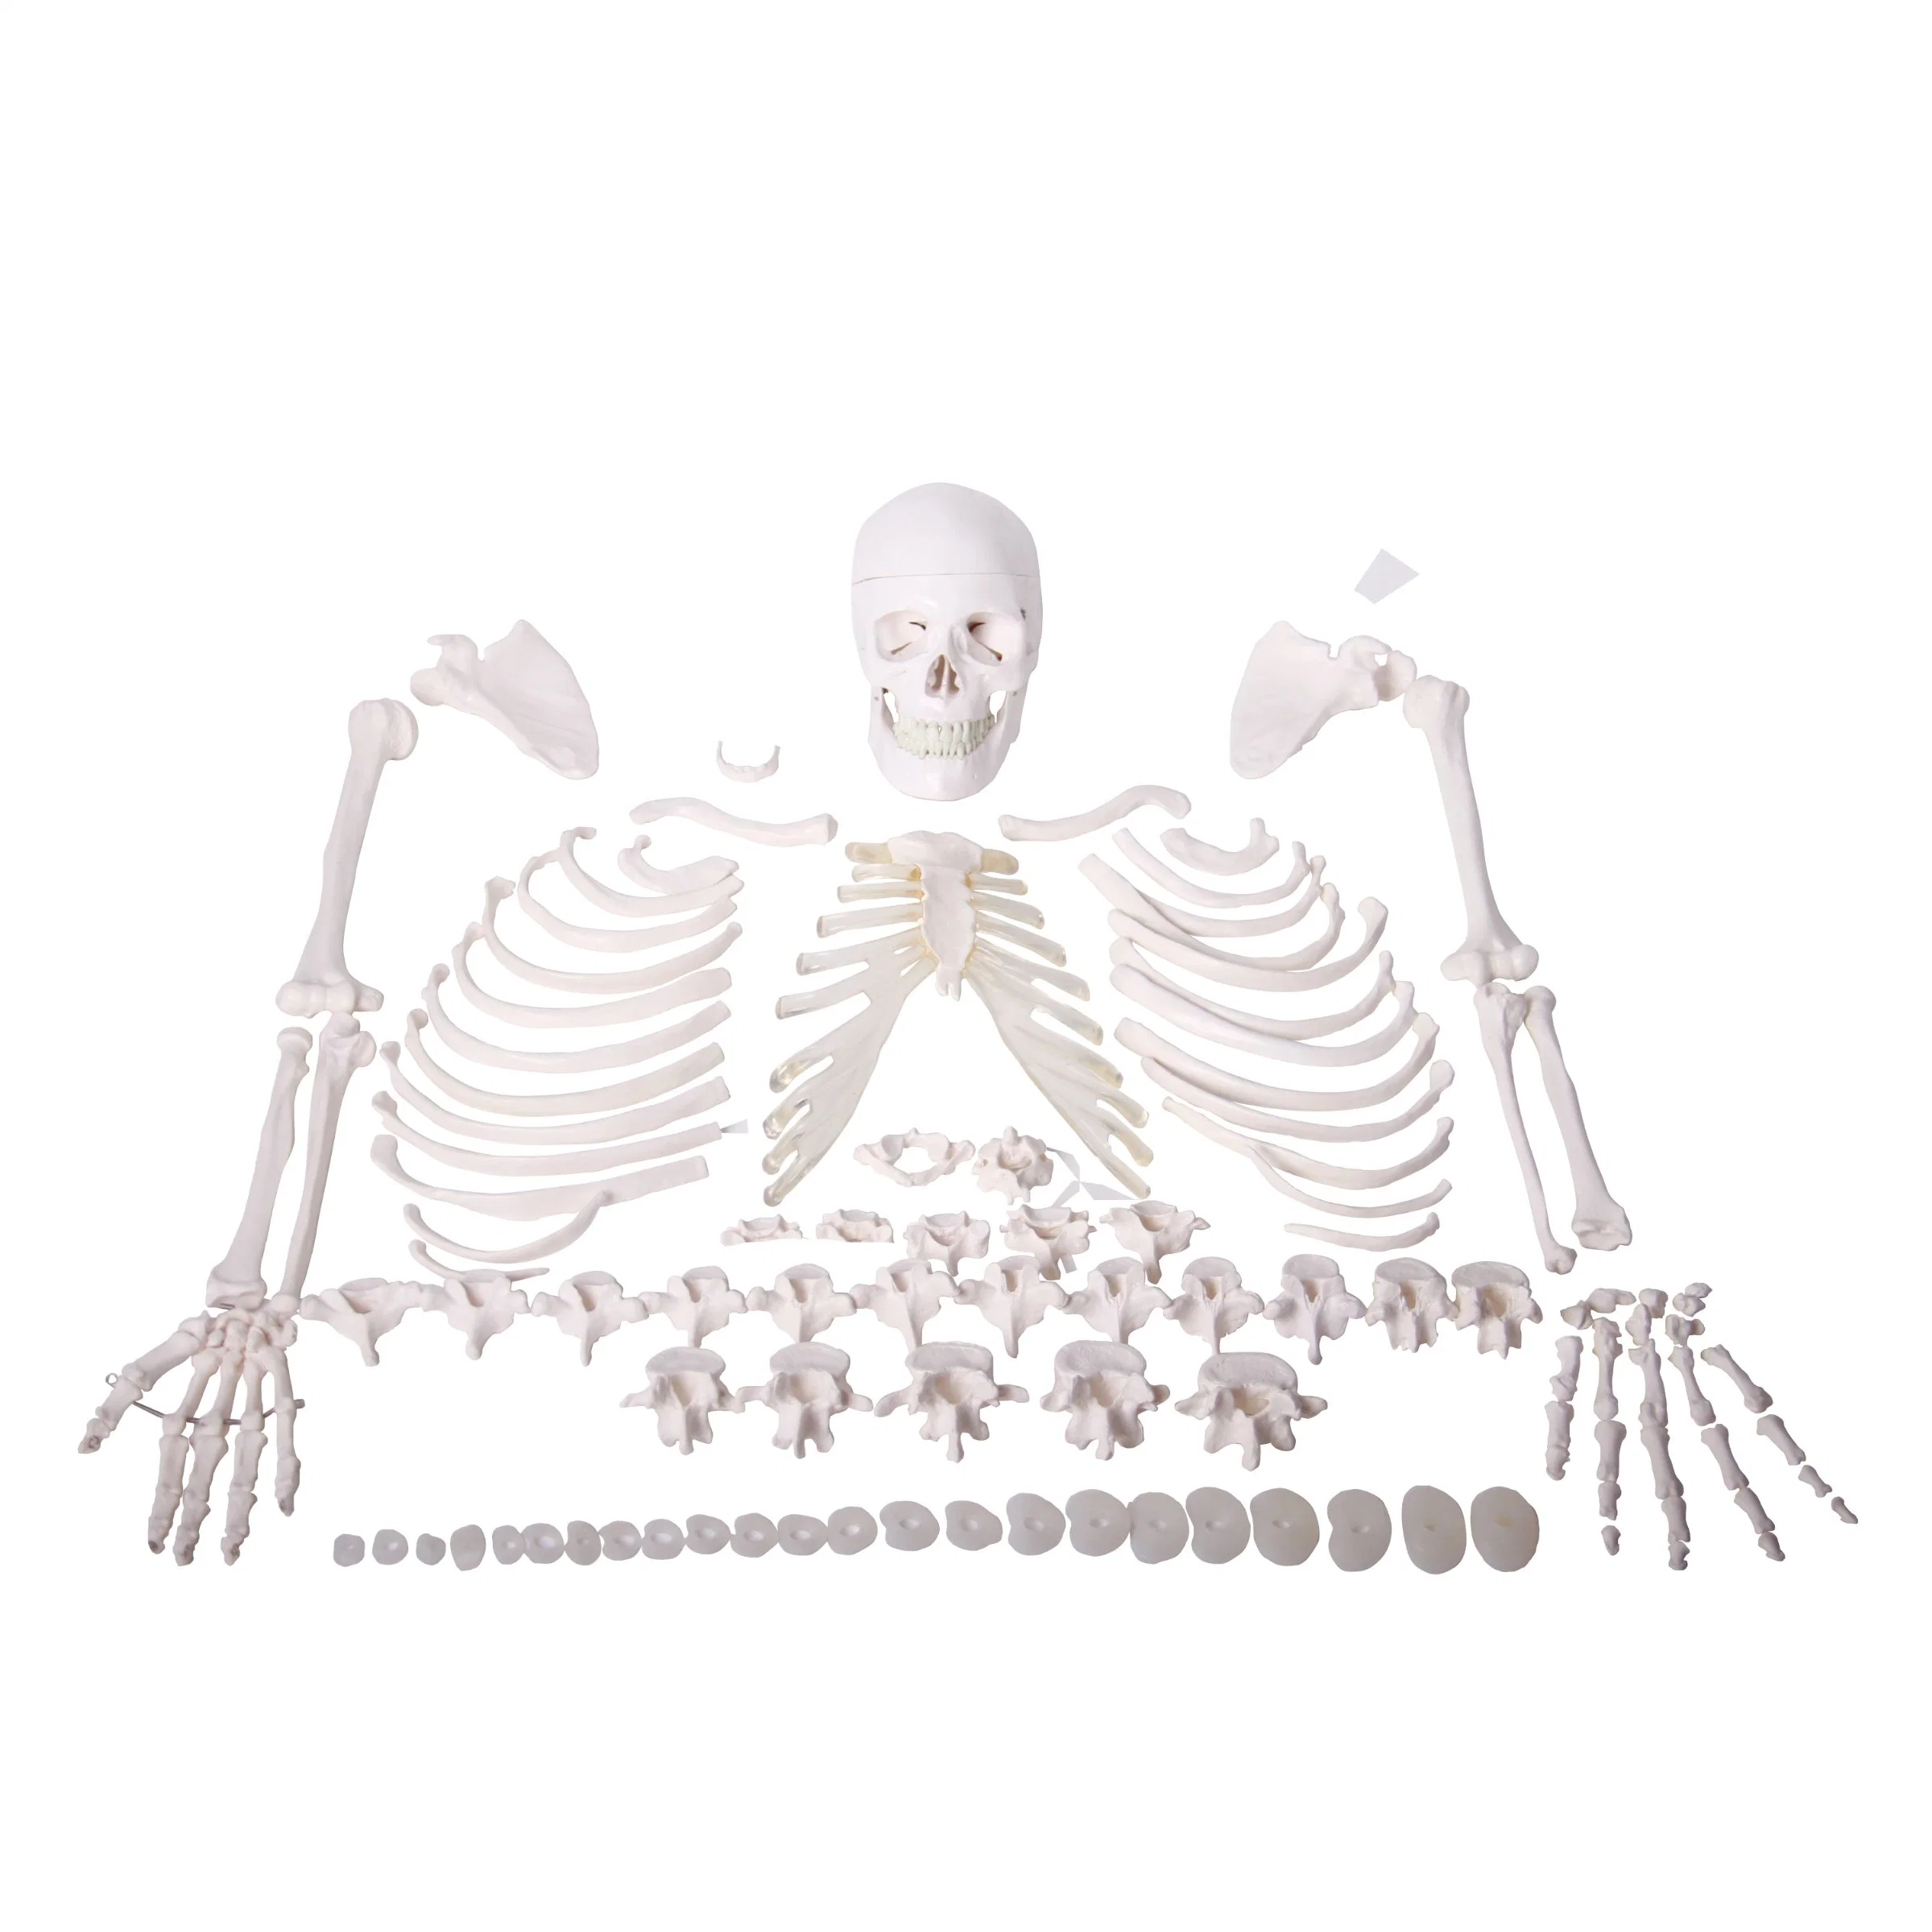 Super Economy Medical 3D modelos 170 cm osso humano de corpo inteiro Modelo Skeleton desarticulado